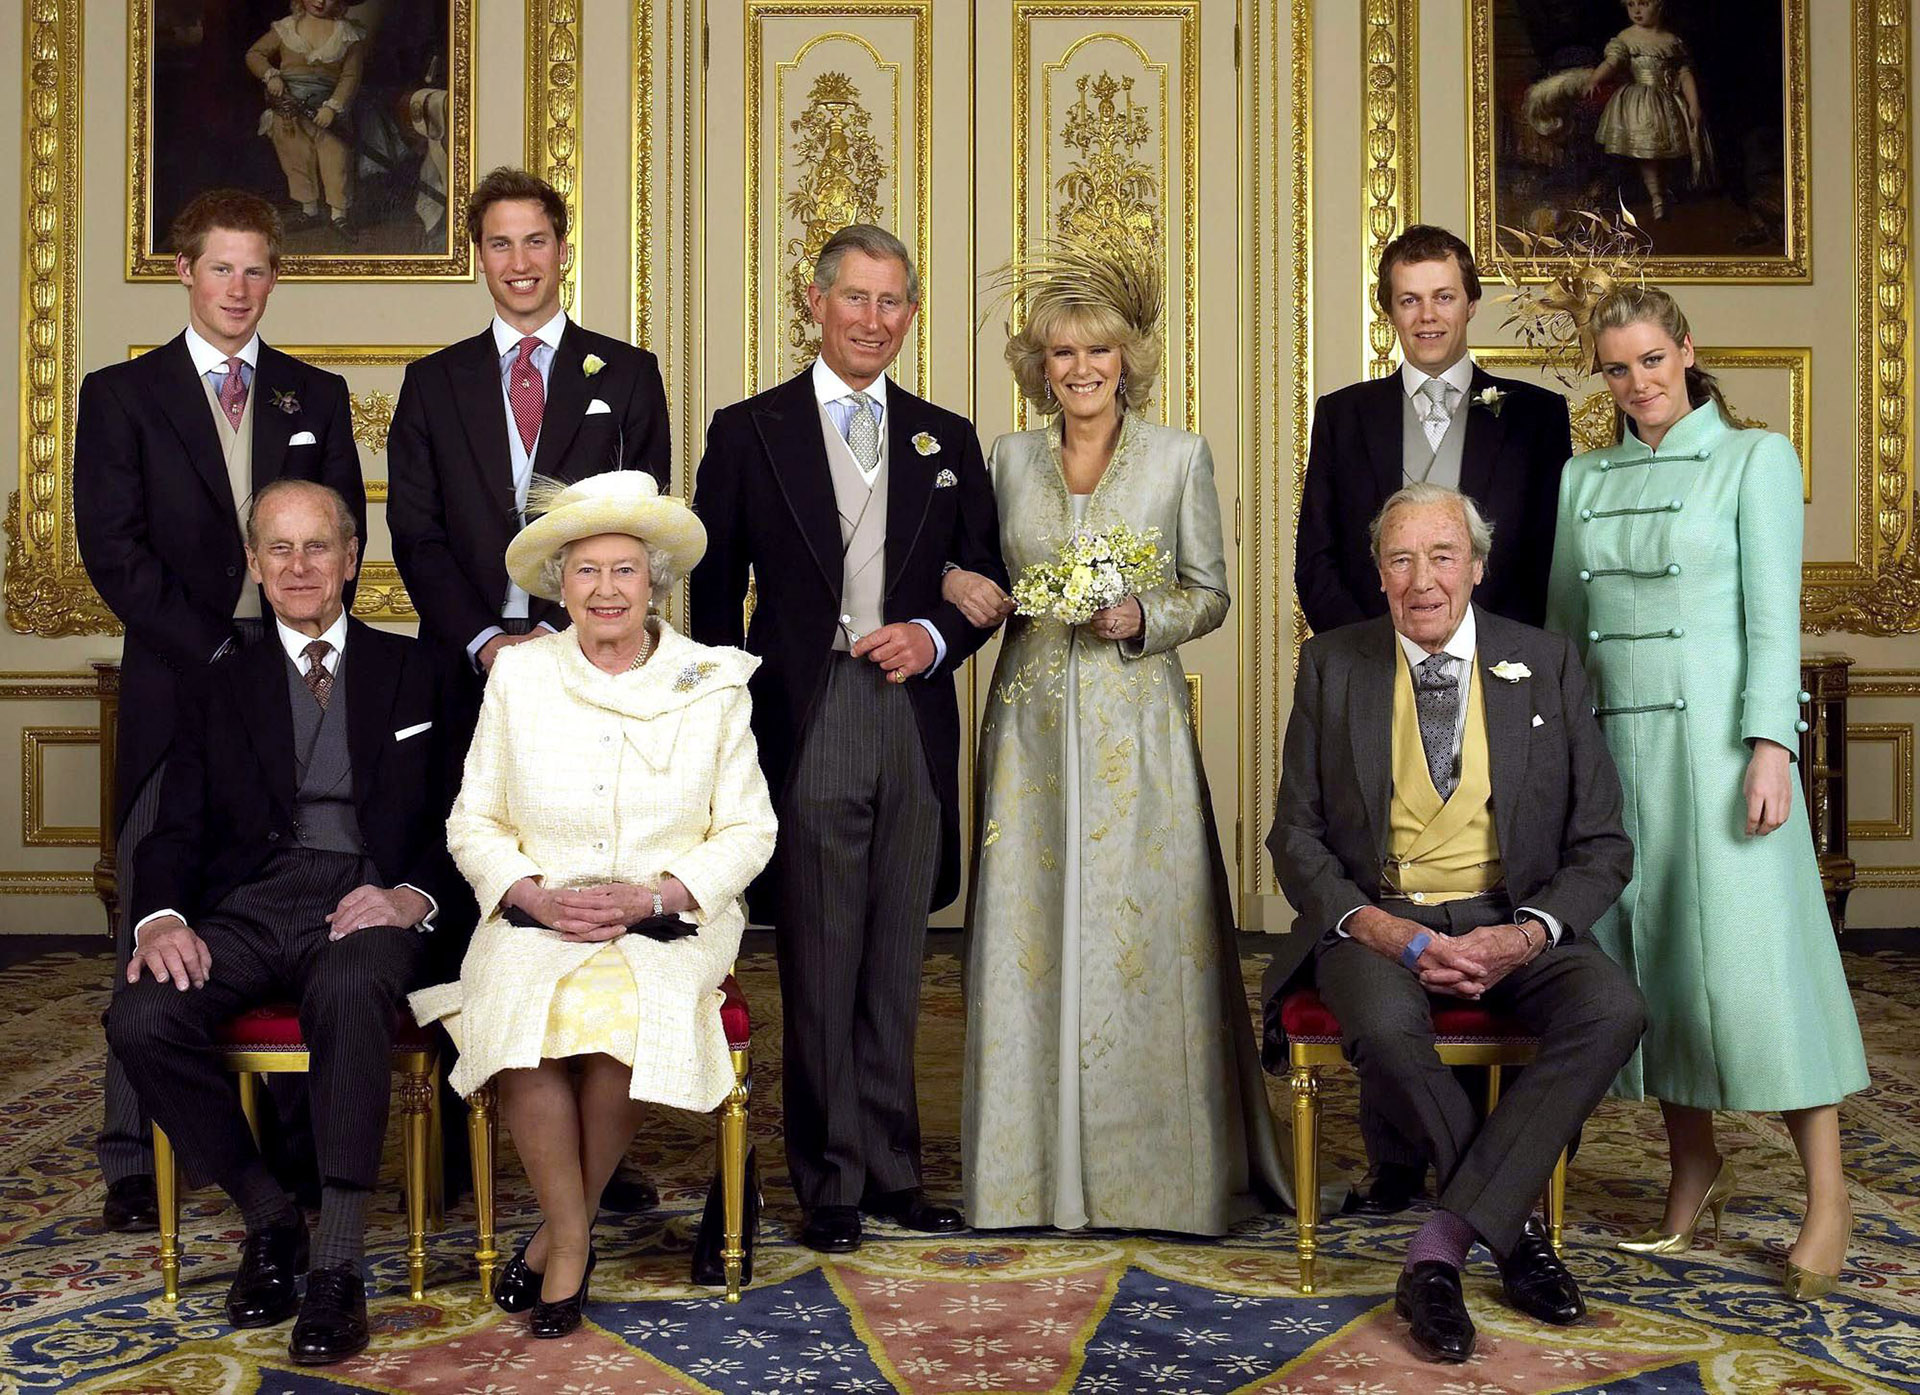 El príncipe Harry, el príncipe William, el príncipe Carlos, la duquesa Camilla de Cornualles, Laura y Tom Parker Bowles, el príncipe Felipe, la reina Isabel II y el comandante Bruce Shand en el salón blanco del castillo de Windsor en la boda del sucesor al trono con Camilla Parker-Bowles el 9 de abril de 2005 